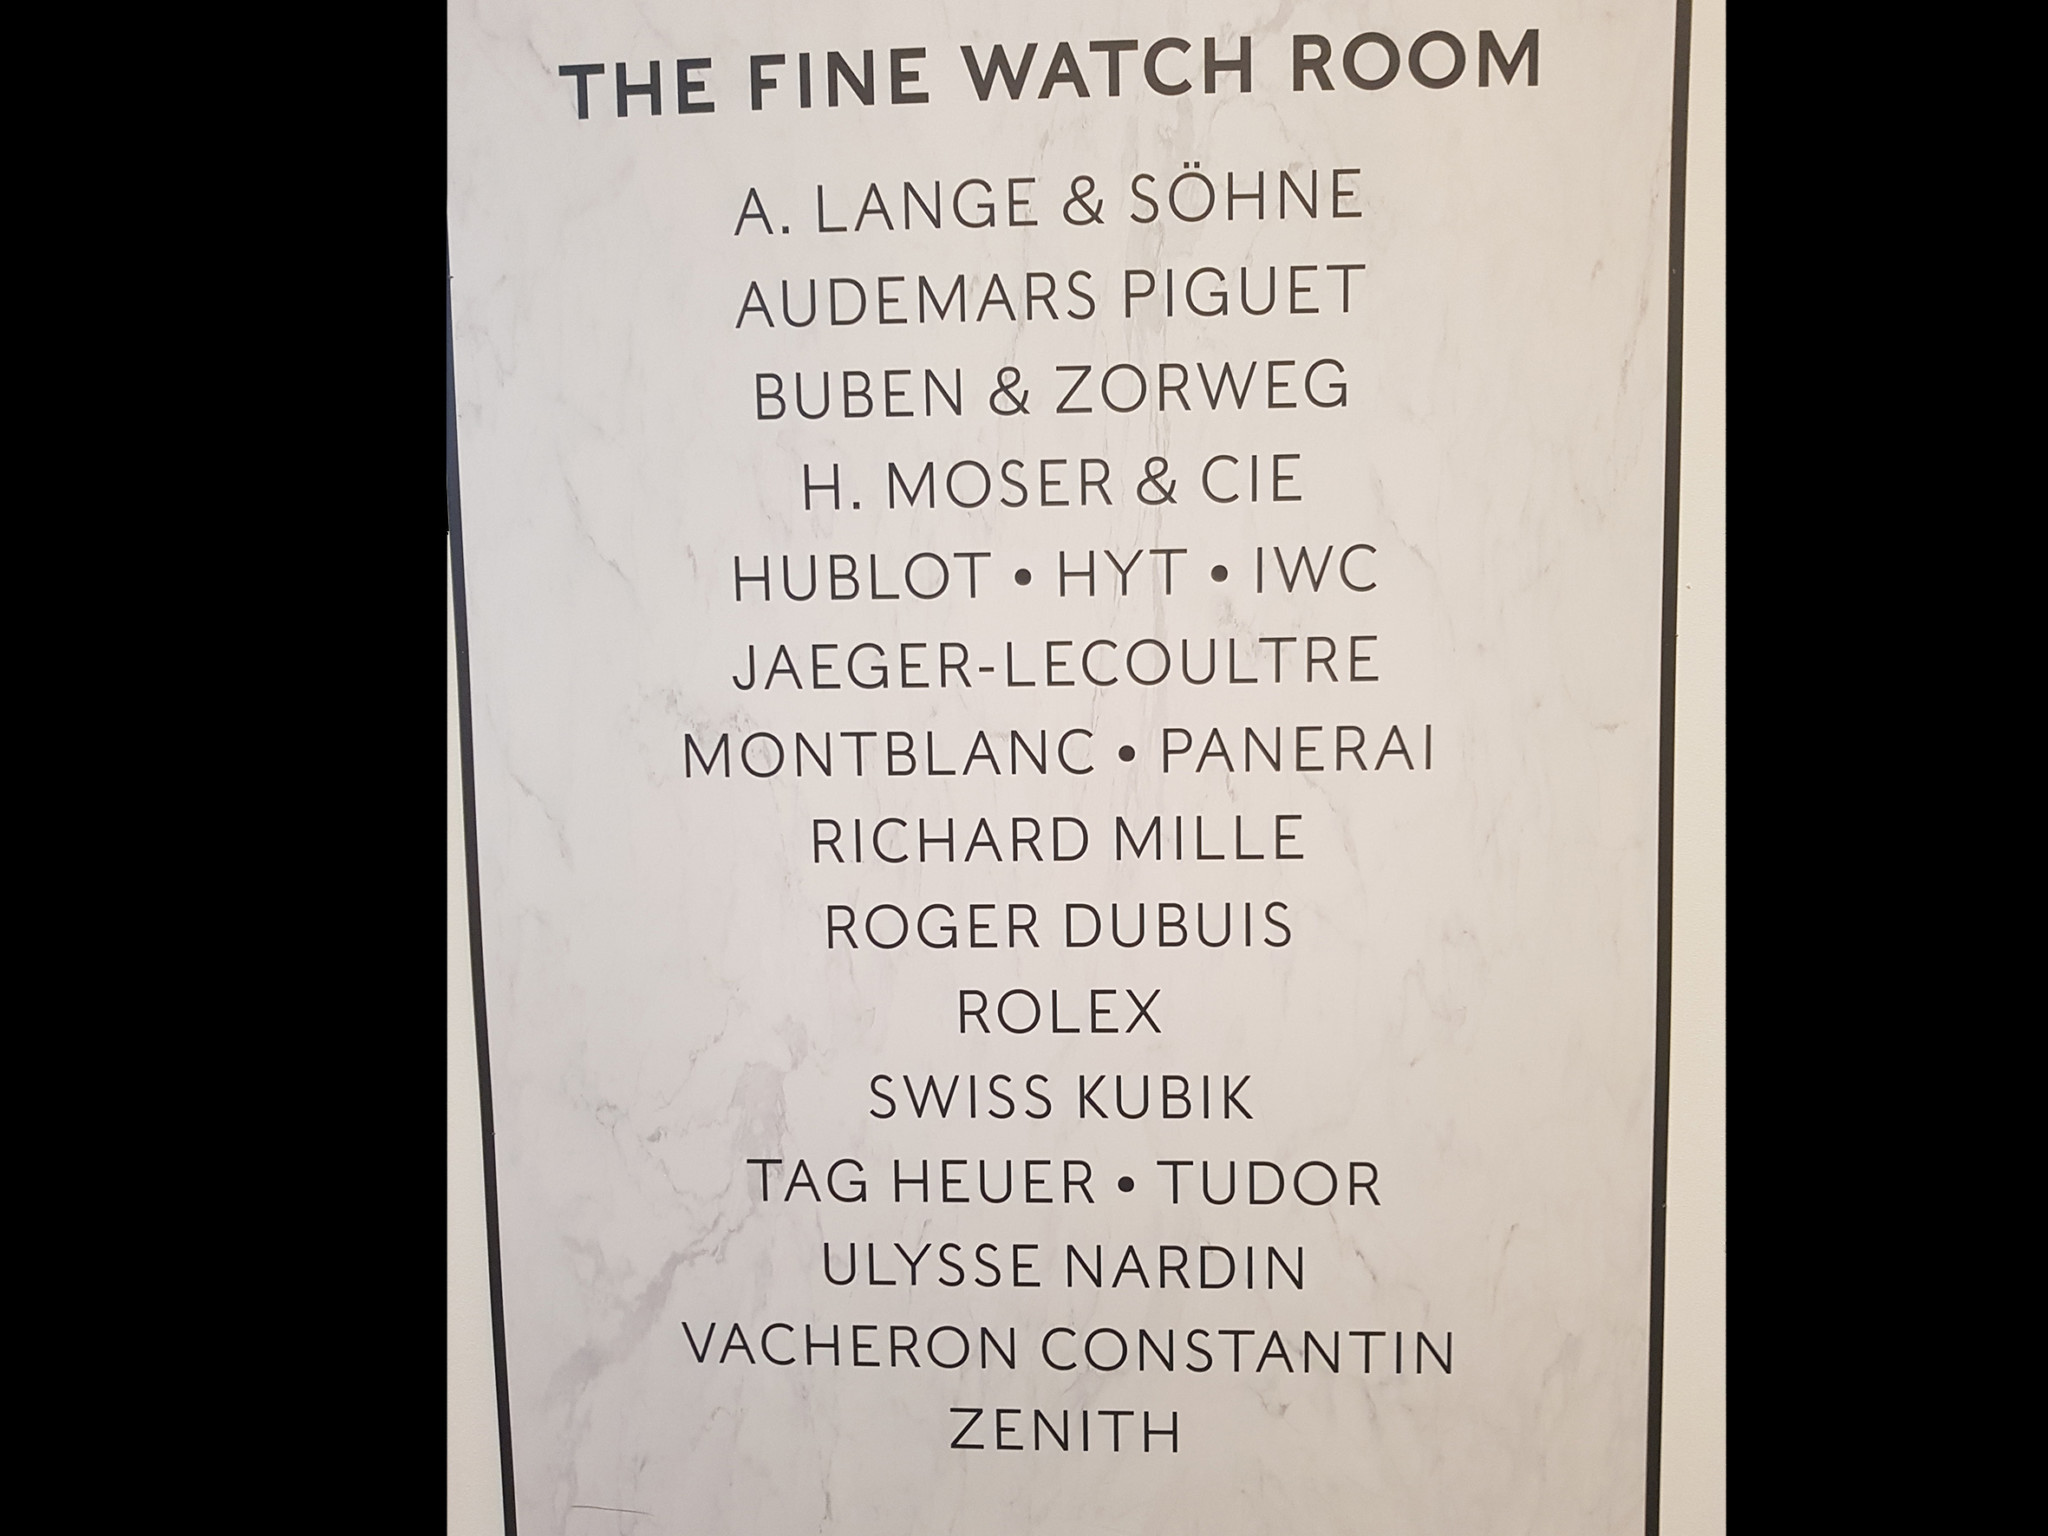 Harrods fine watch room brands